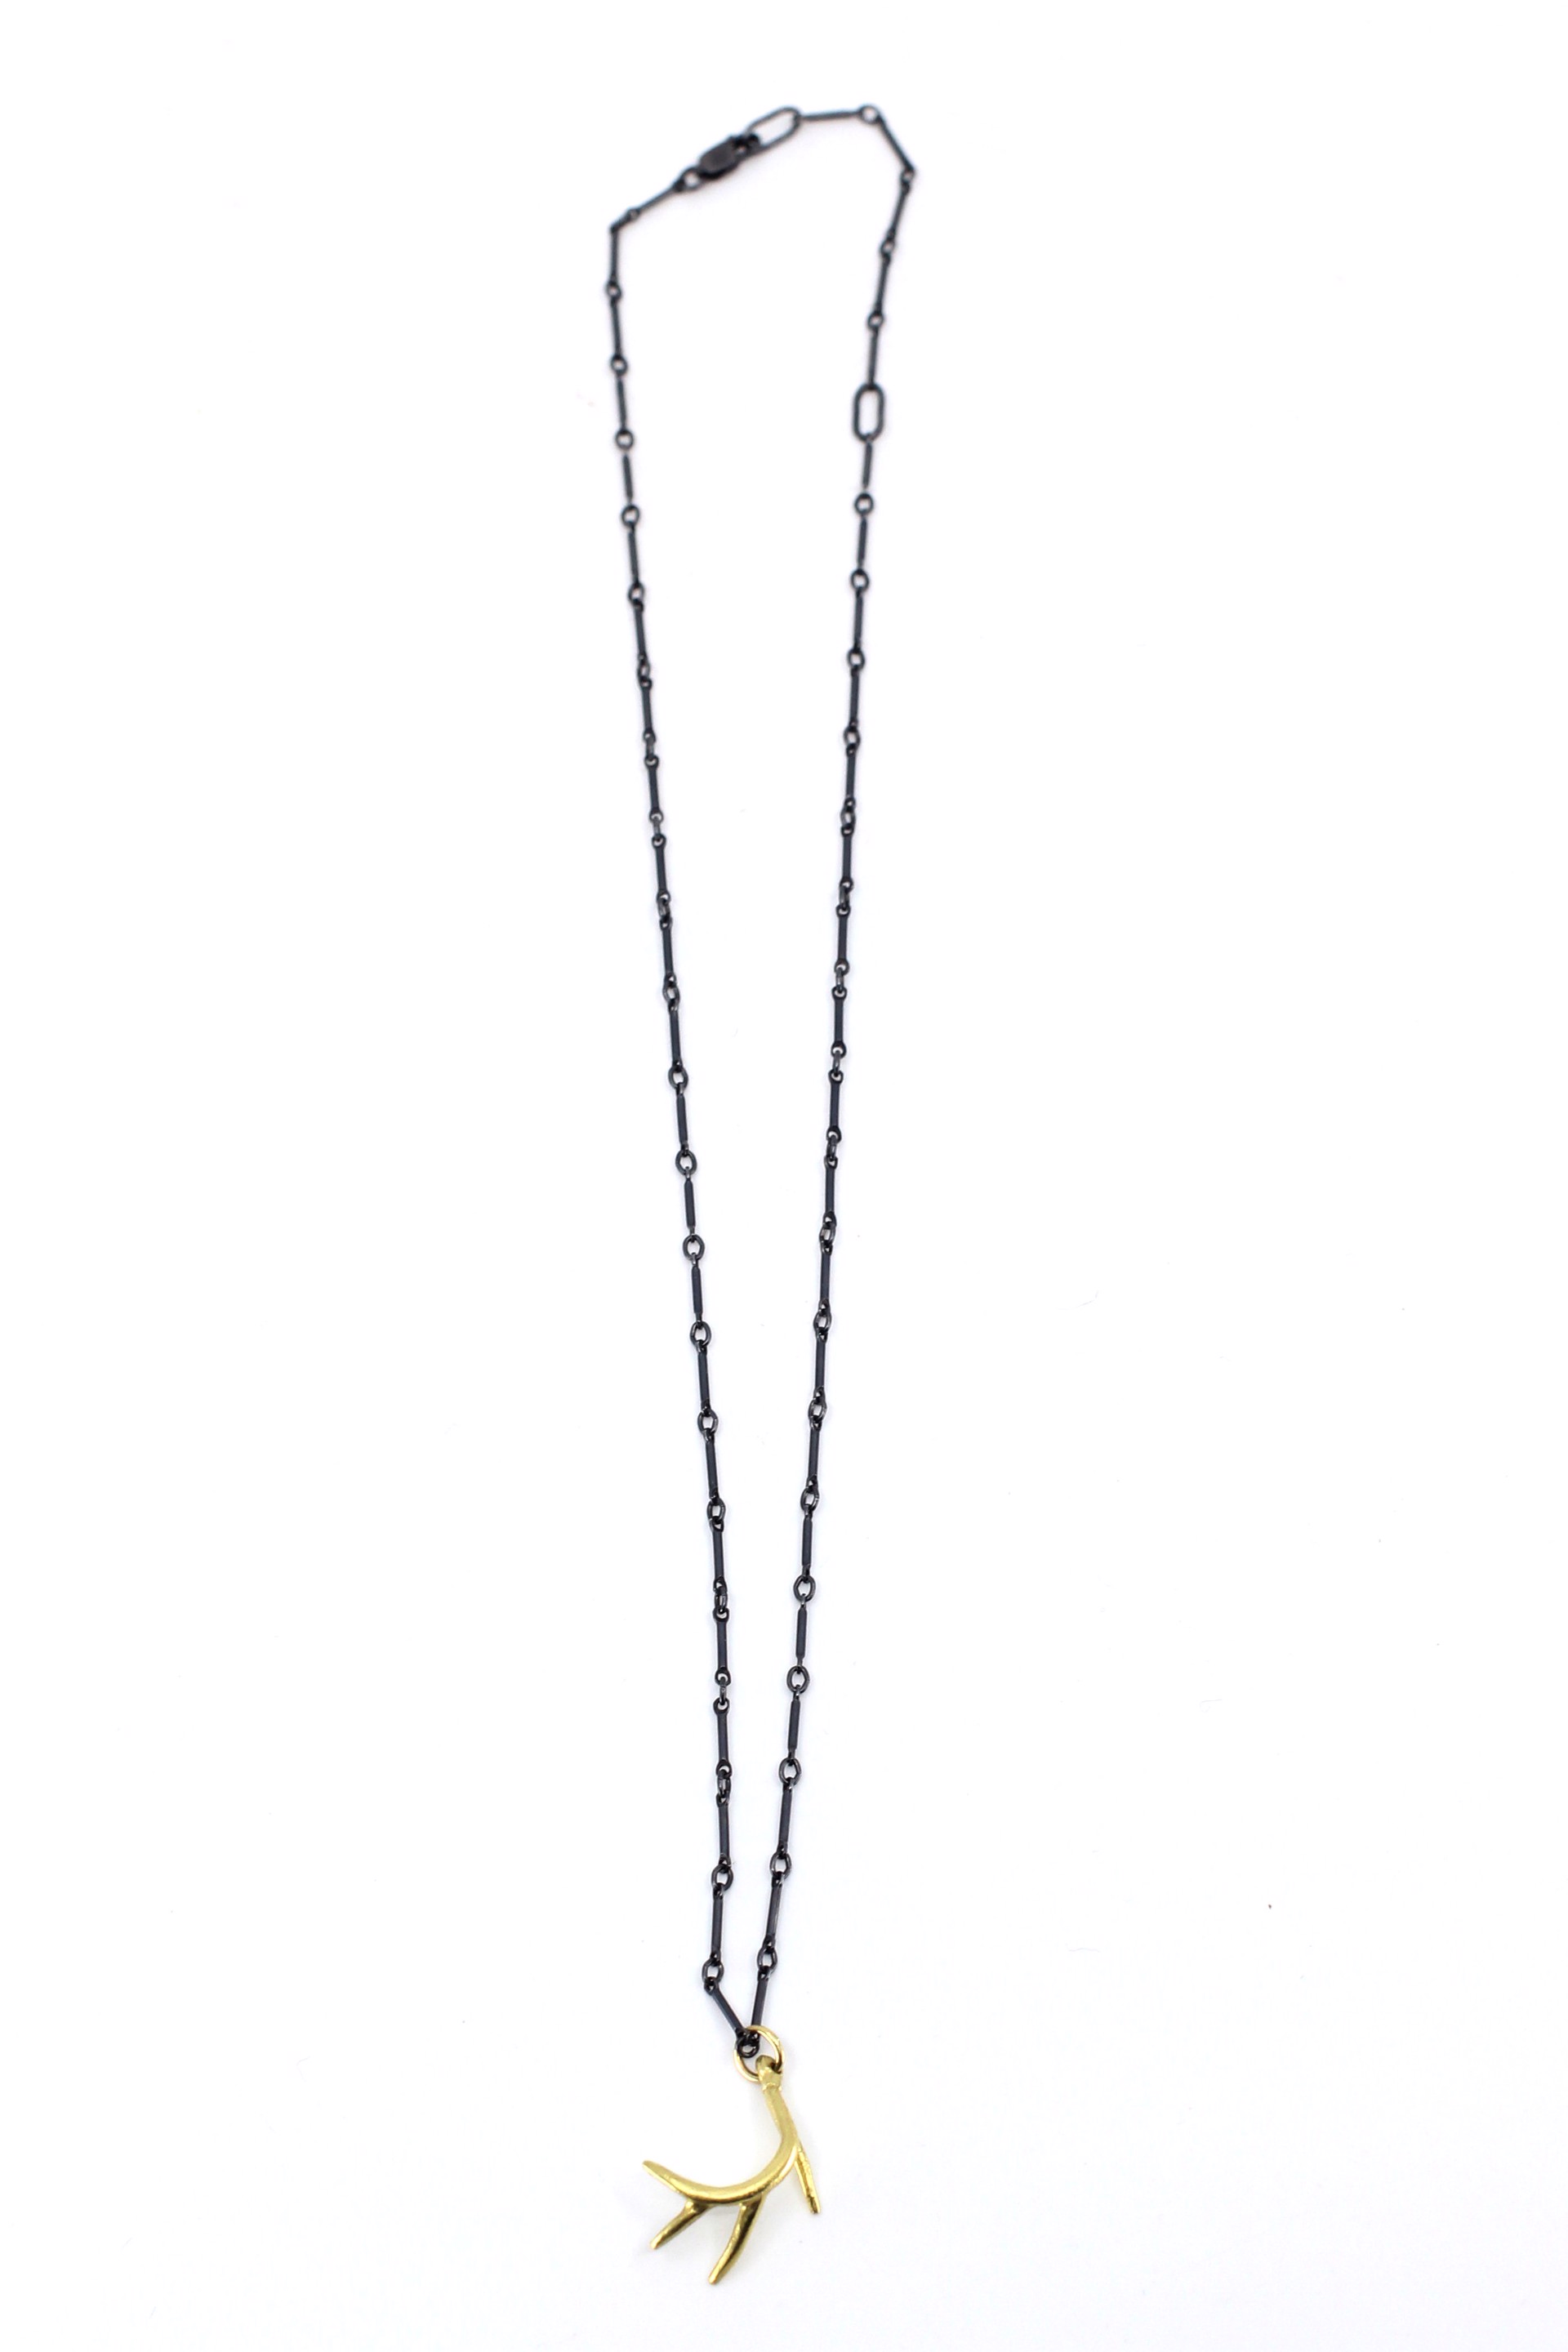 18k Deer Antler Necklace by Susan Elnora